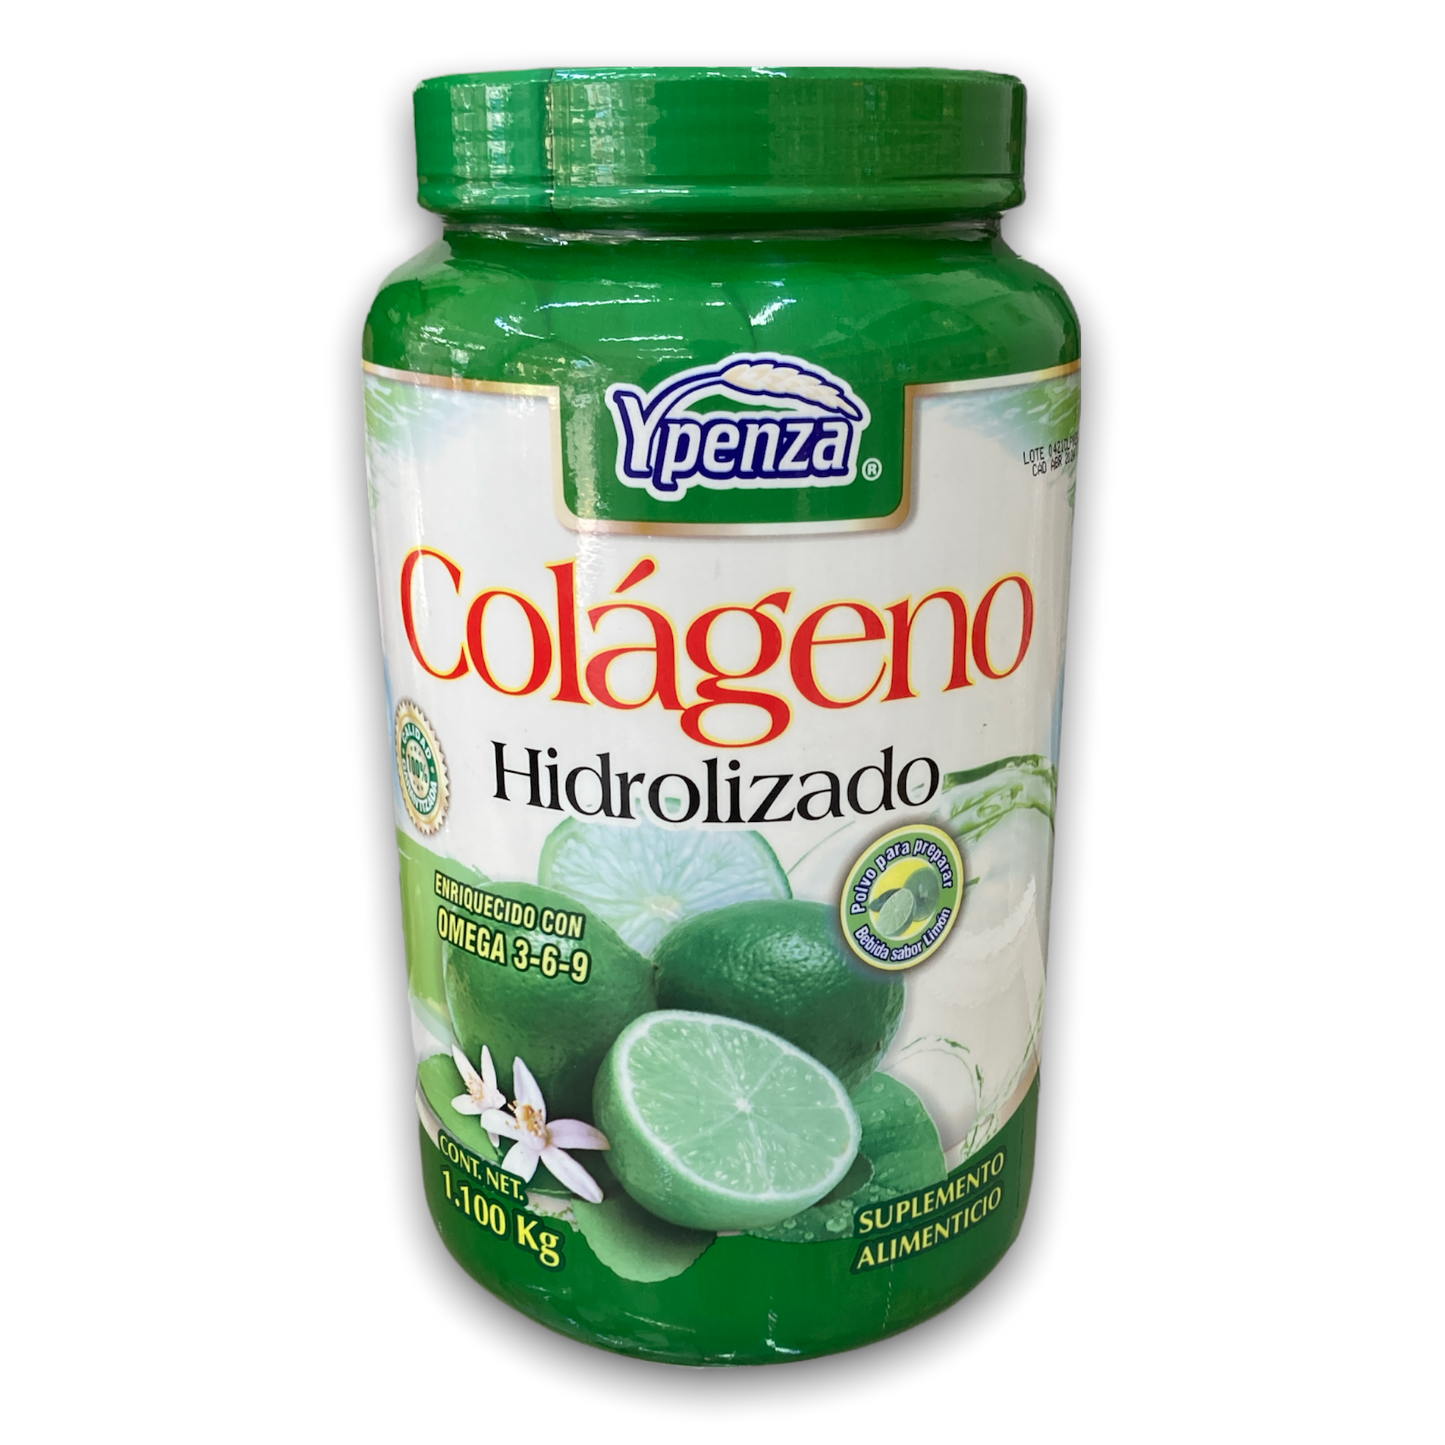 Colágeno Hidrolizado Manzana Verde 1.1 kg Ypenza